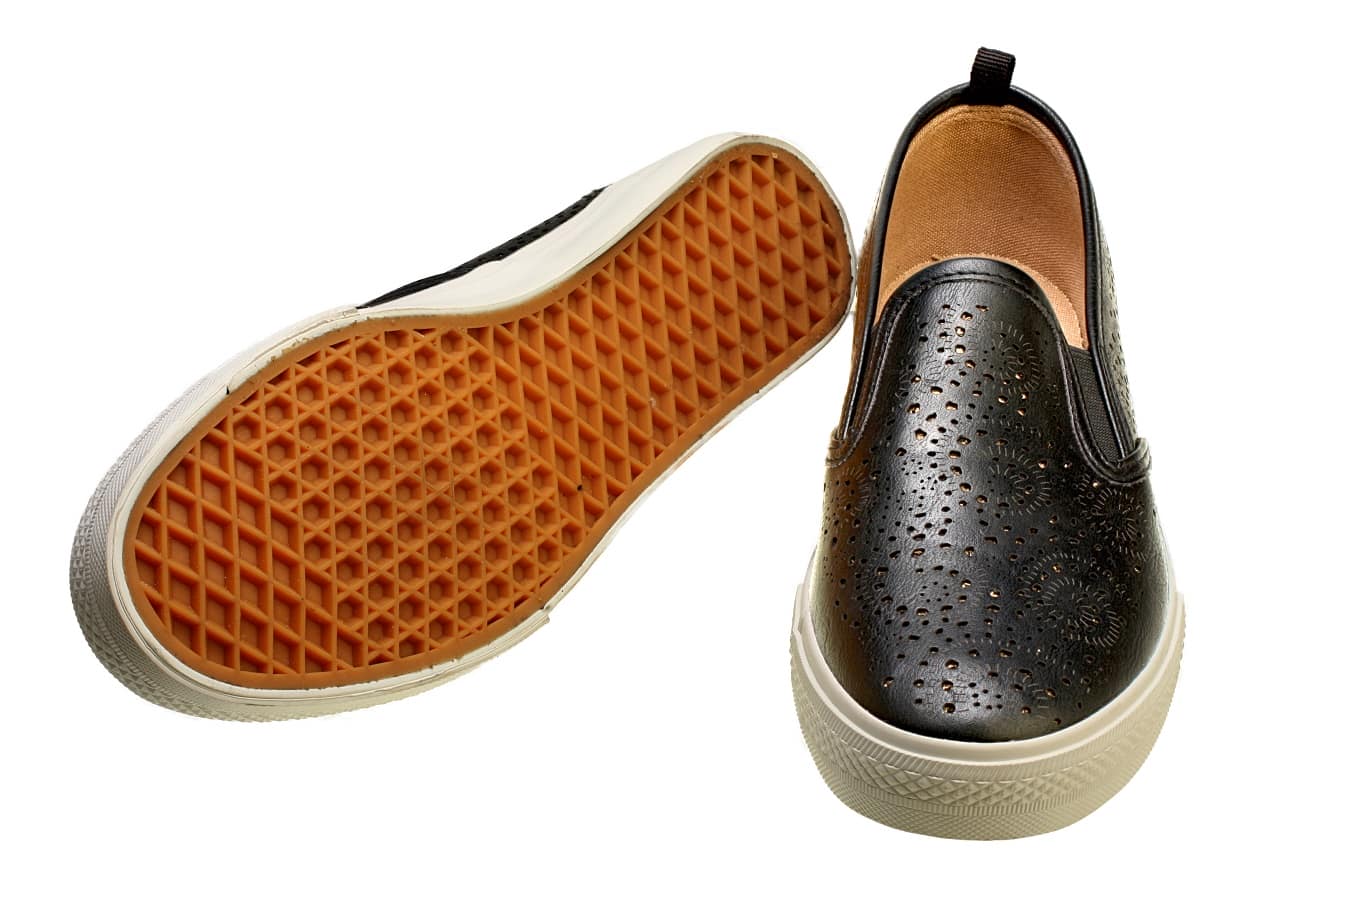 Jakie czynniki wpływają na wygodę noszenia butów?